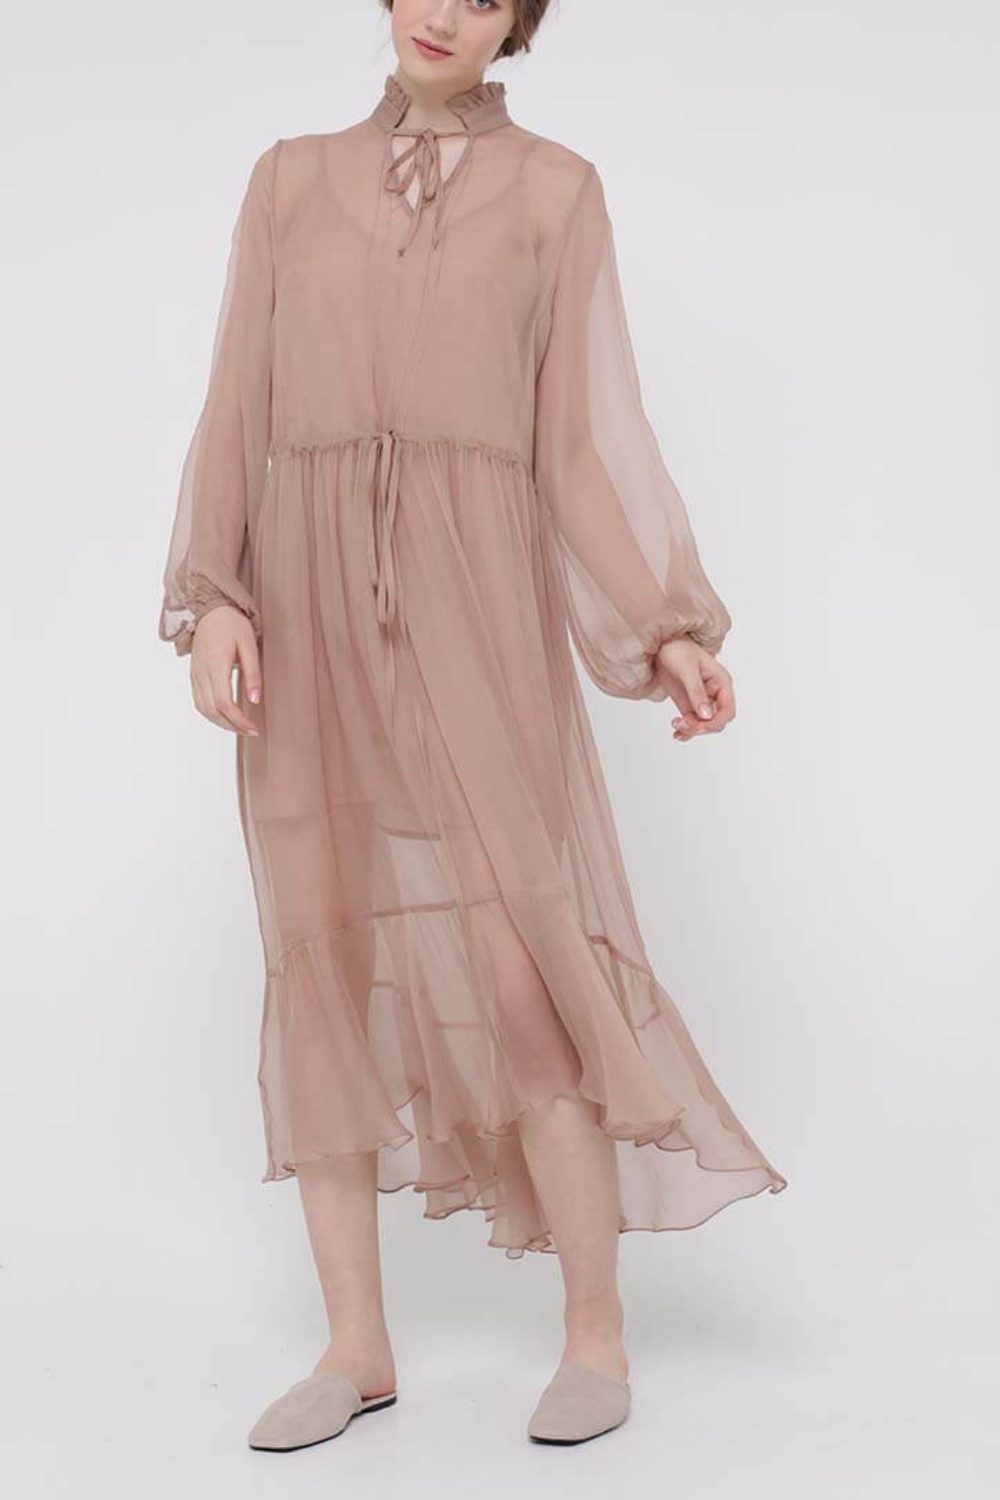 Šifonové šaty midi s volánem dole, béžová, (MissSecret), DR-018-beige